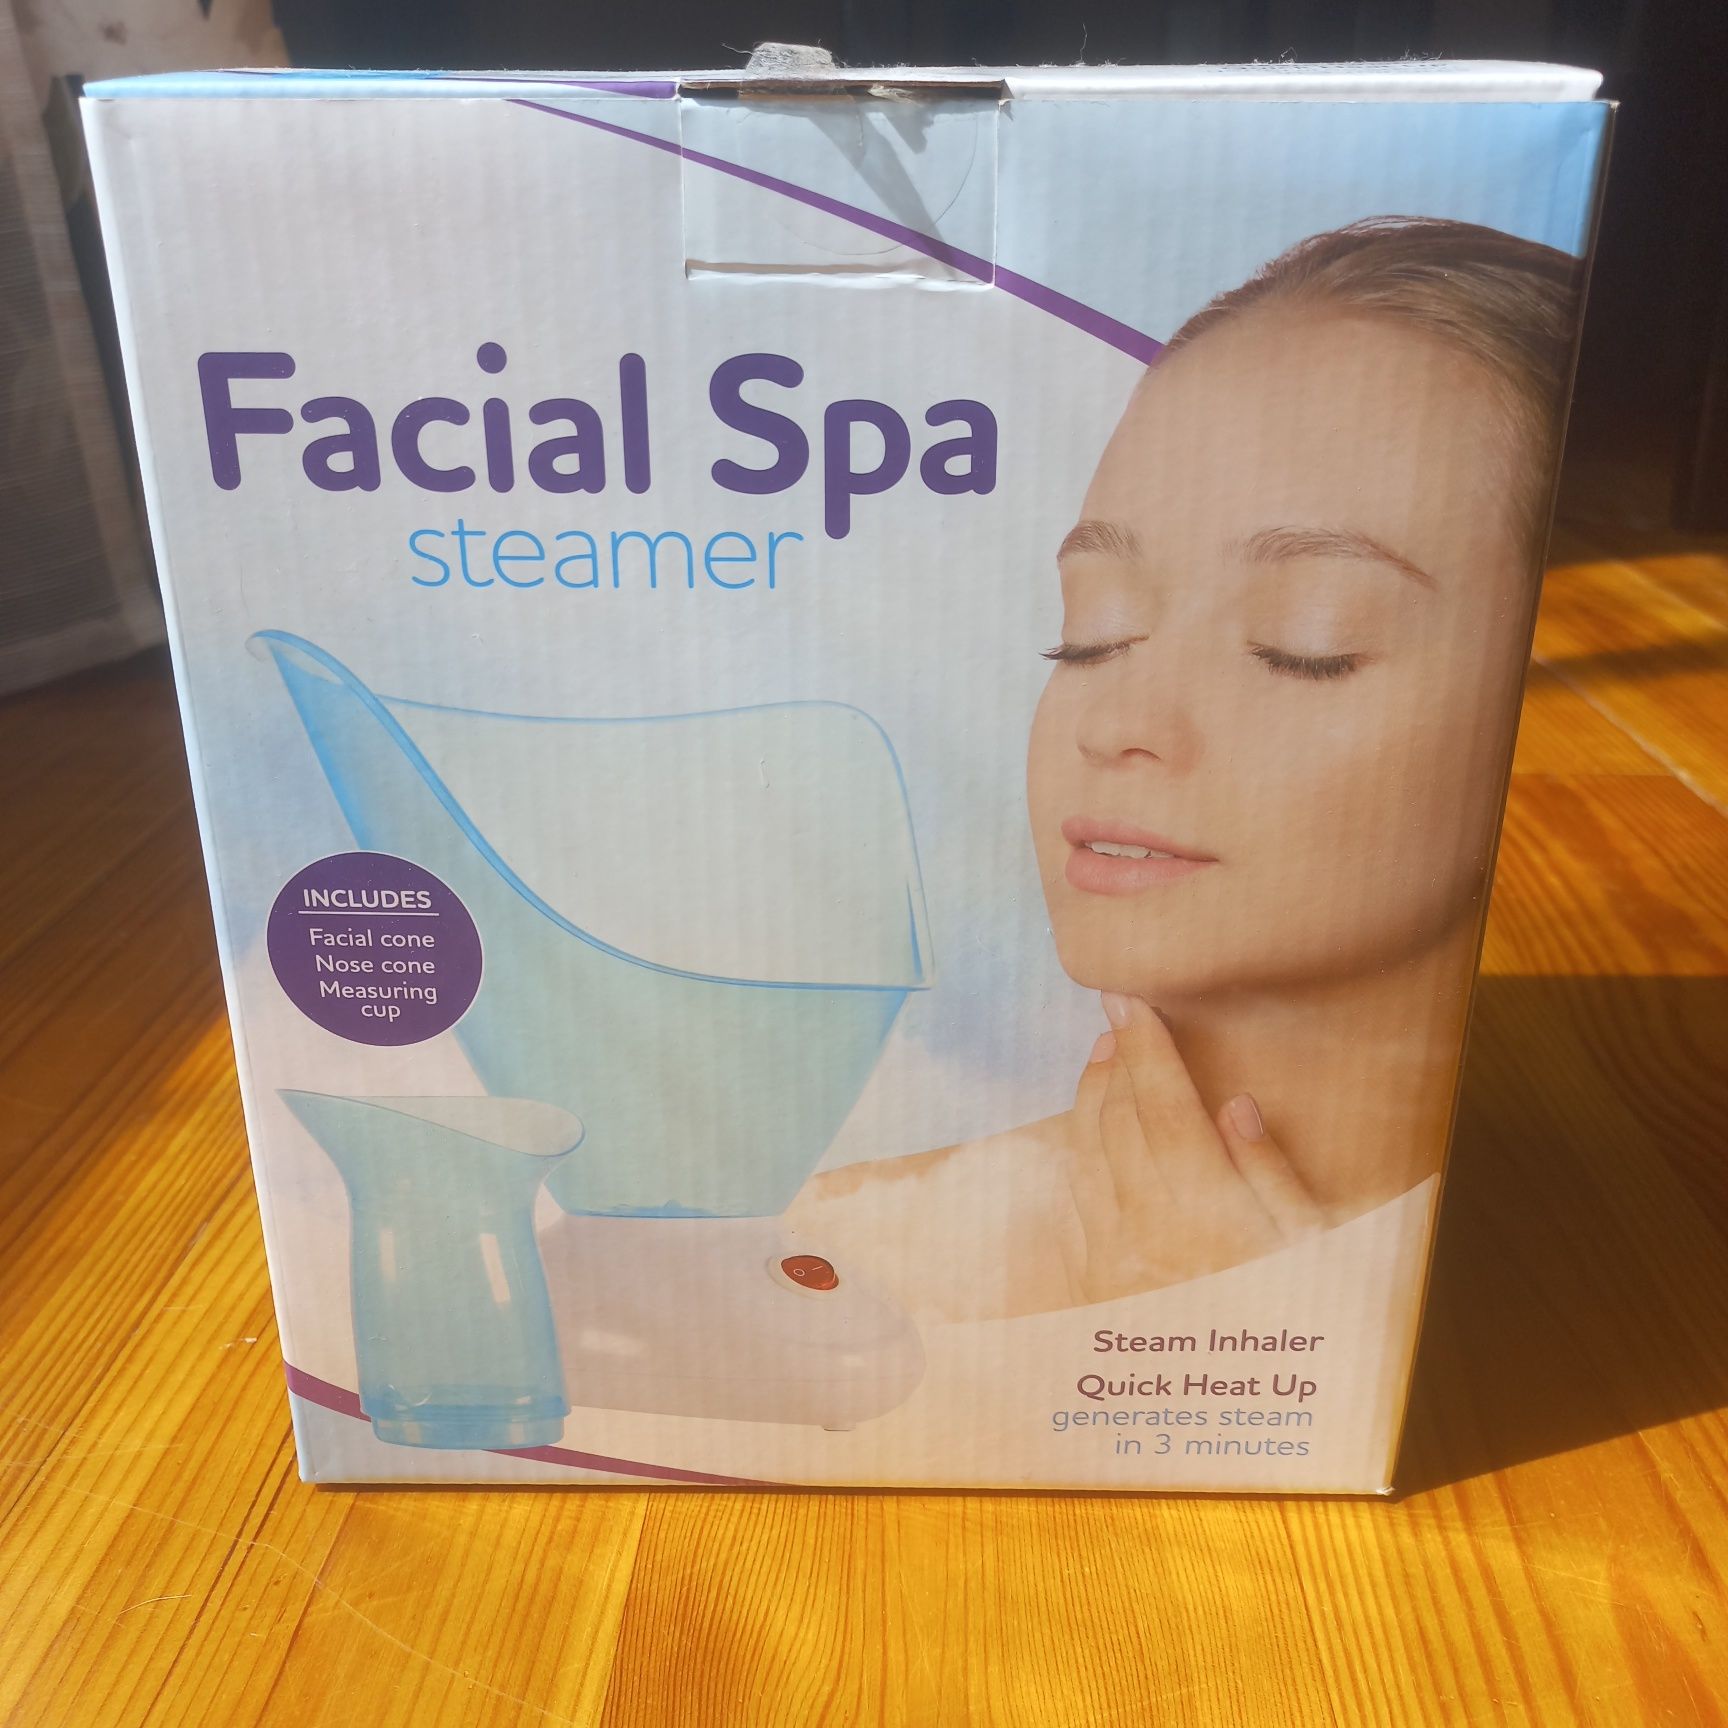 Facial spa steamer